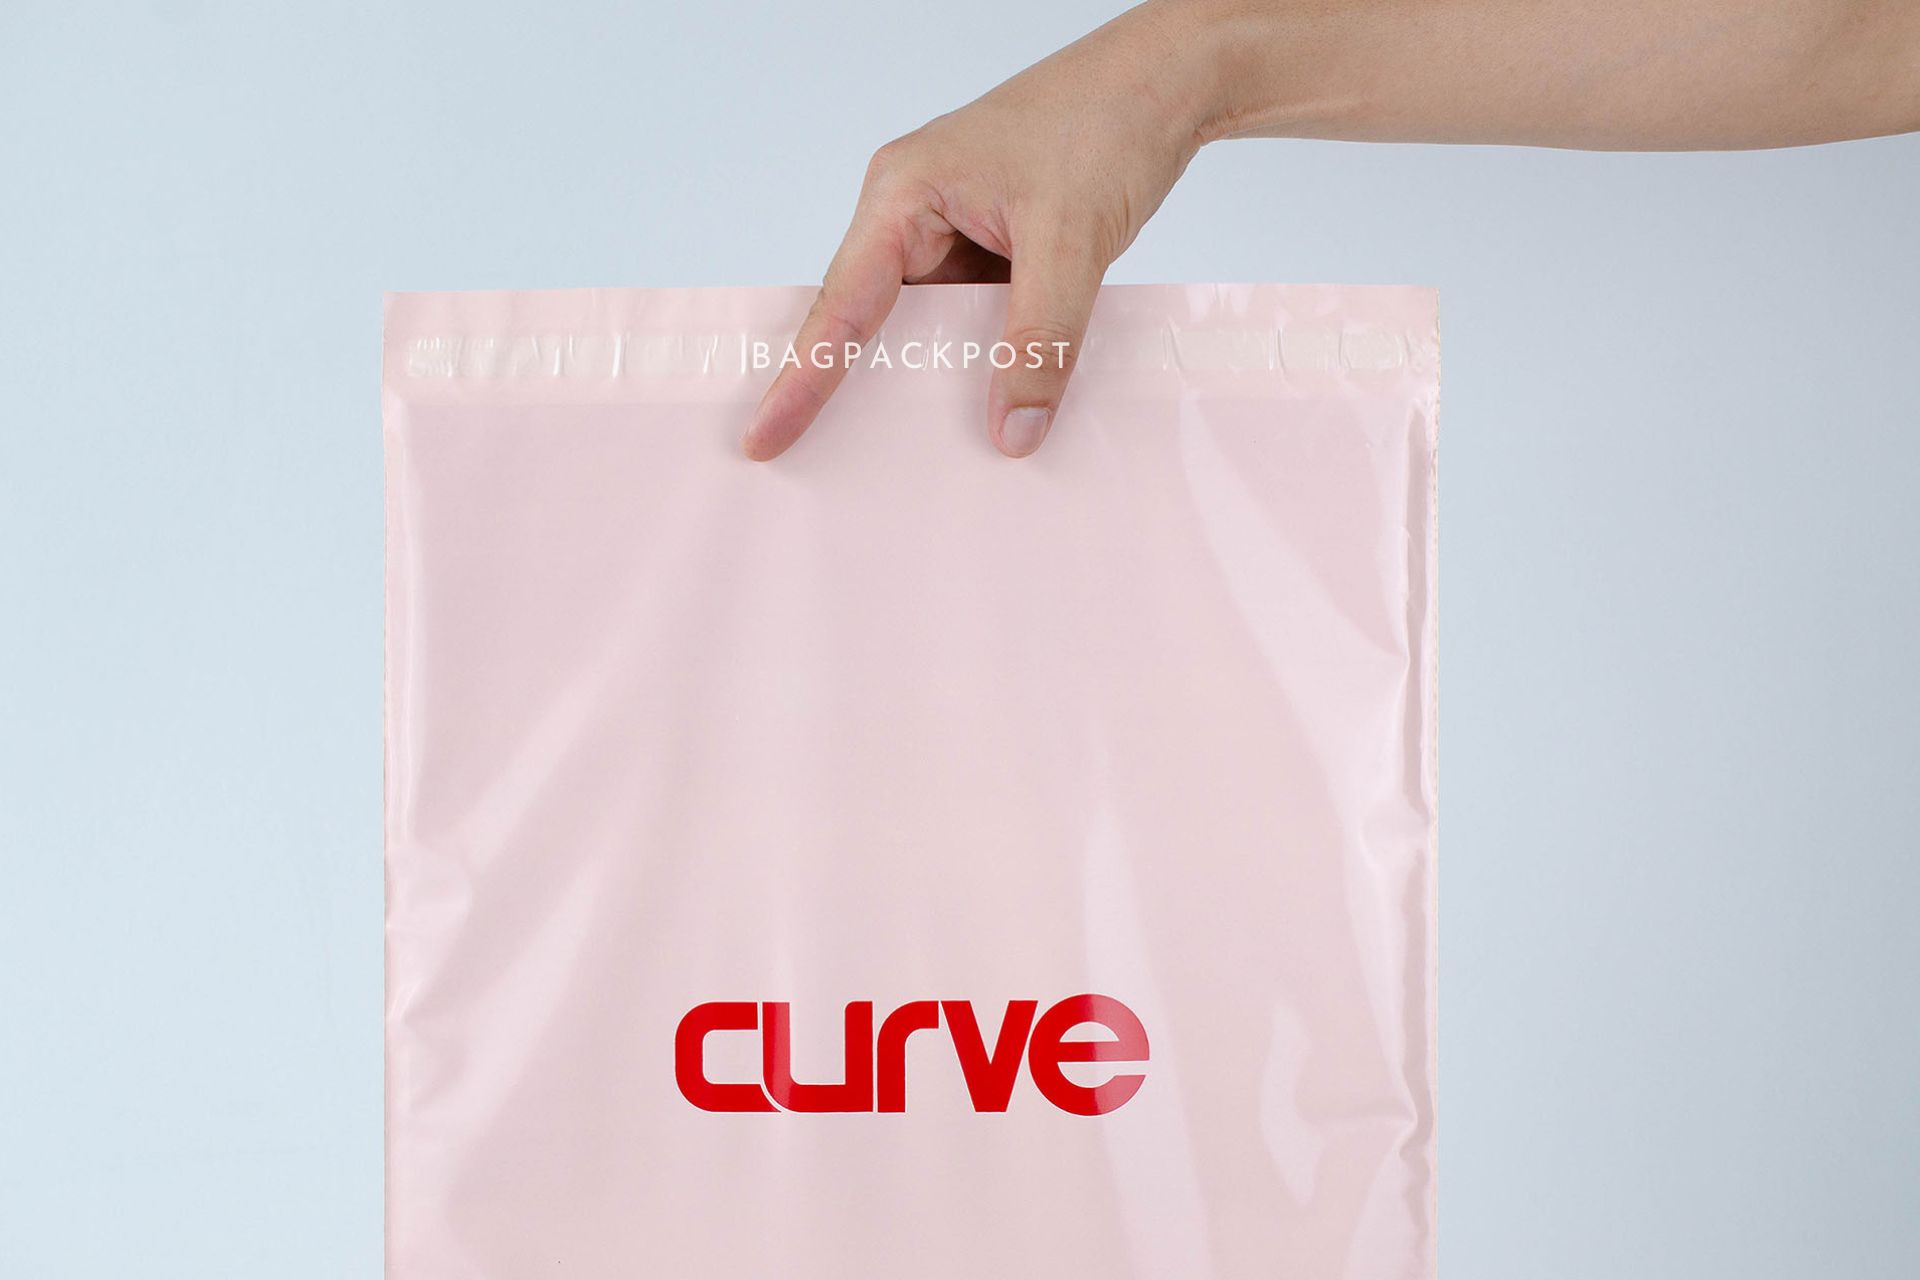 ผลิตถุงไปรษณีย์ ซองไปรษณีย์พิมพ์ลาย แบรนด์ CURVE ซองไปรษณีย์สีชมพู ถุงไปรษณีย์พิมพ์ลาย 2 BagPackPost